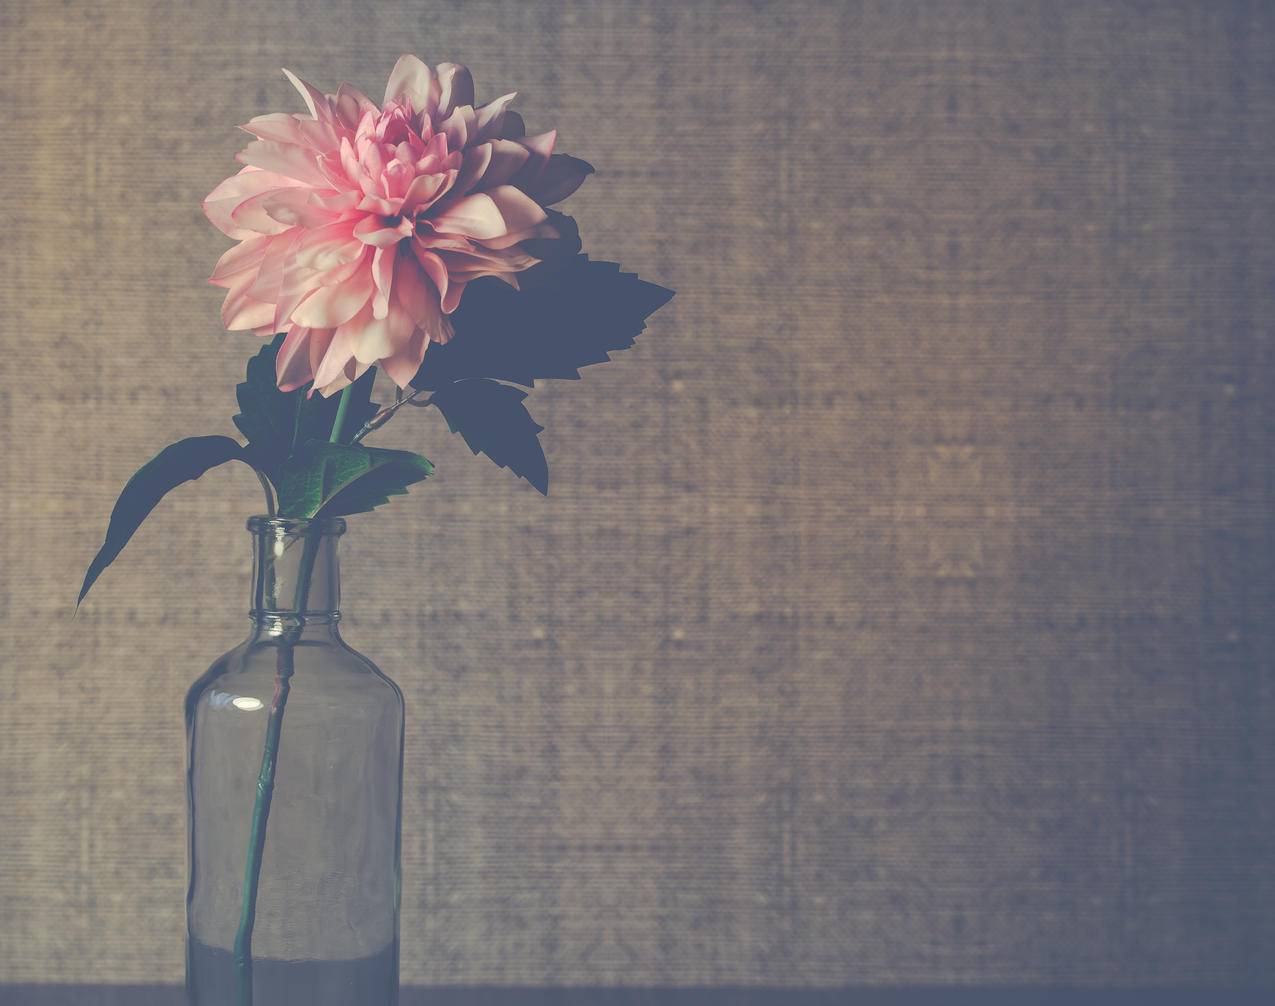 清澈的玻璃花瓶,粉红大丽花盛开